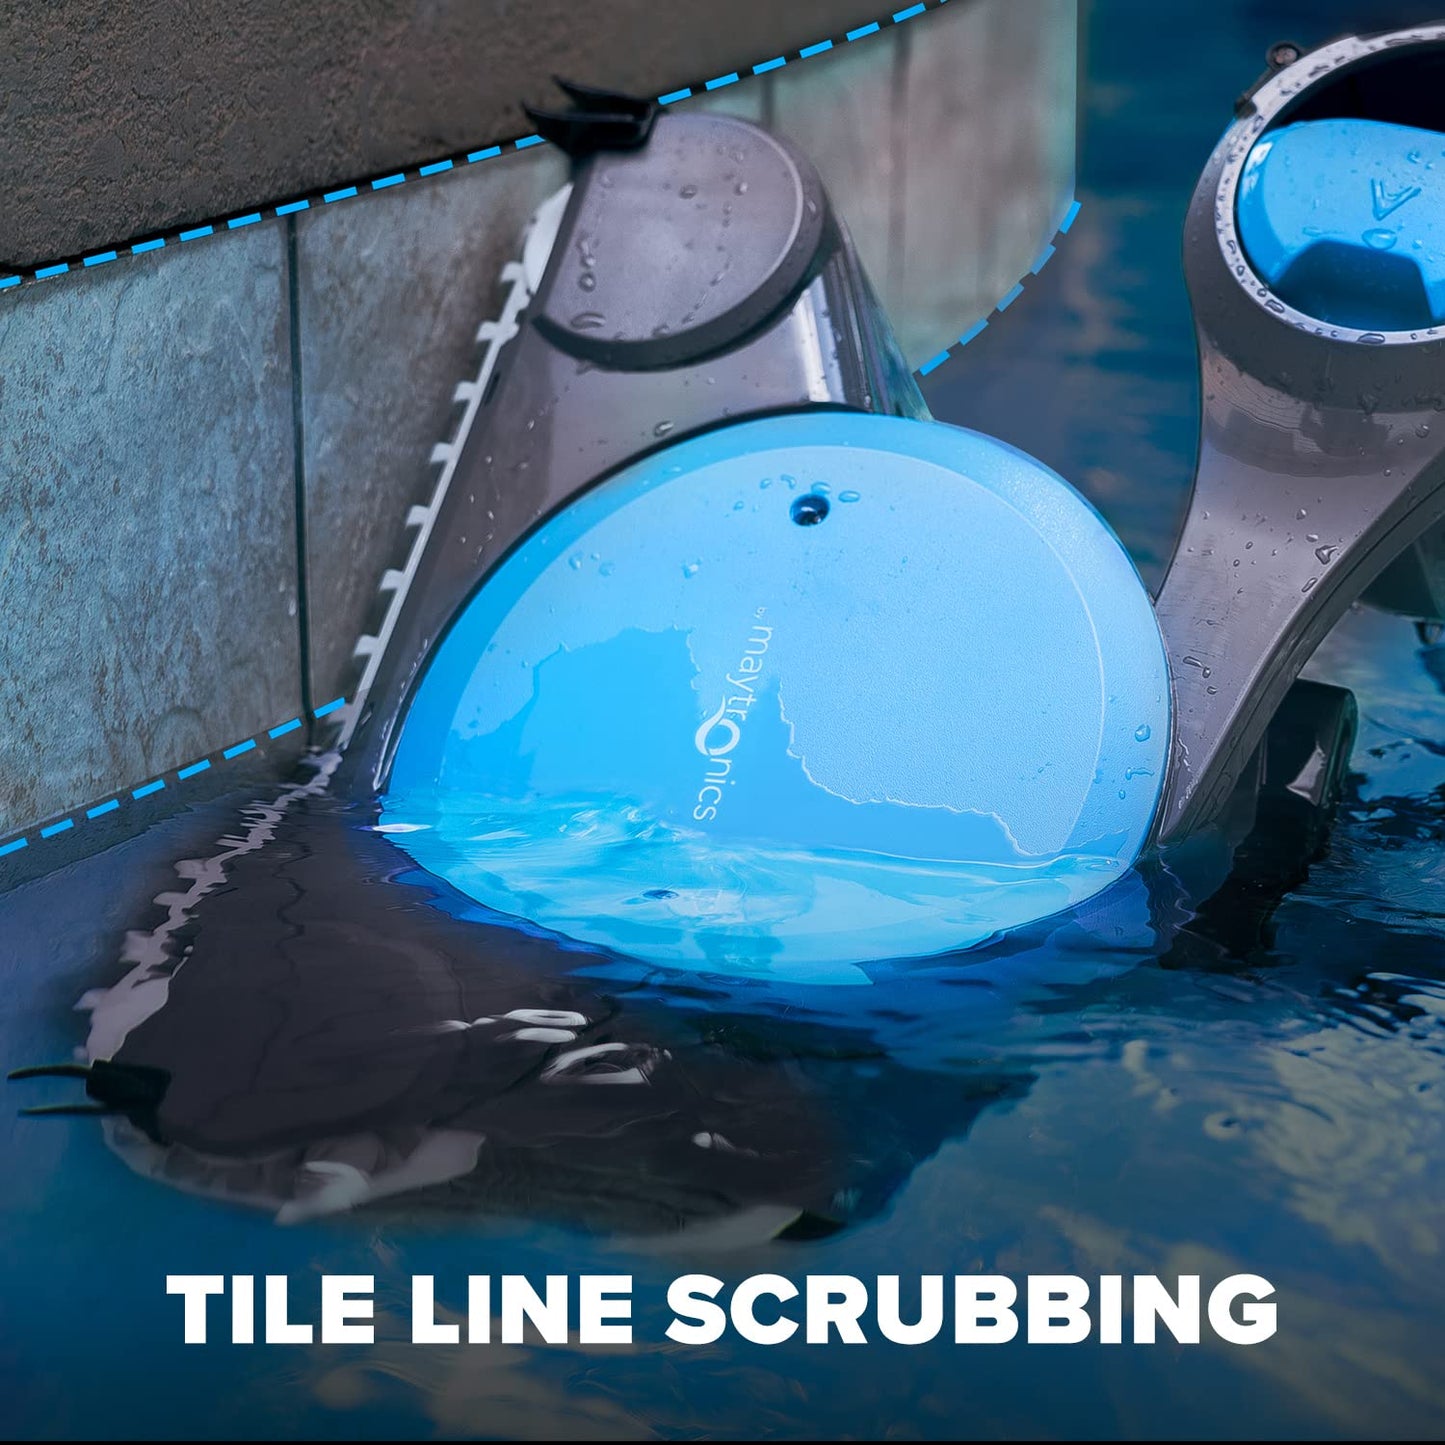 Robot nettoyeur de piscine Dolphin Premier avec doubles brosses de récurage puissantes et plusieurs options de filtre, idéal pour les piscines creusées jusqu'à 50 pieds.